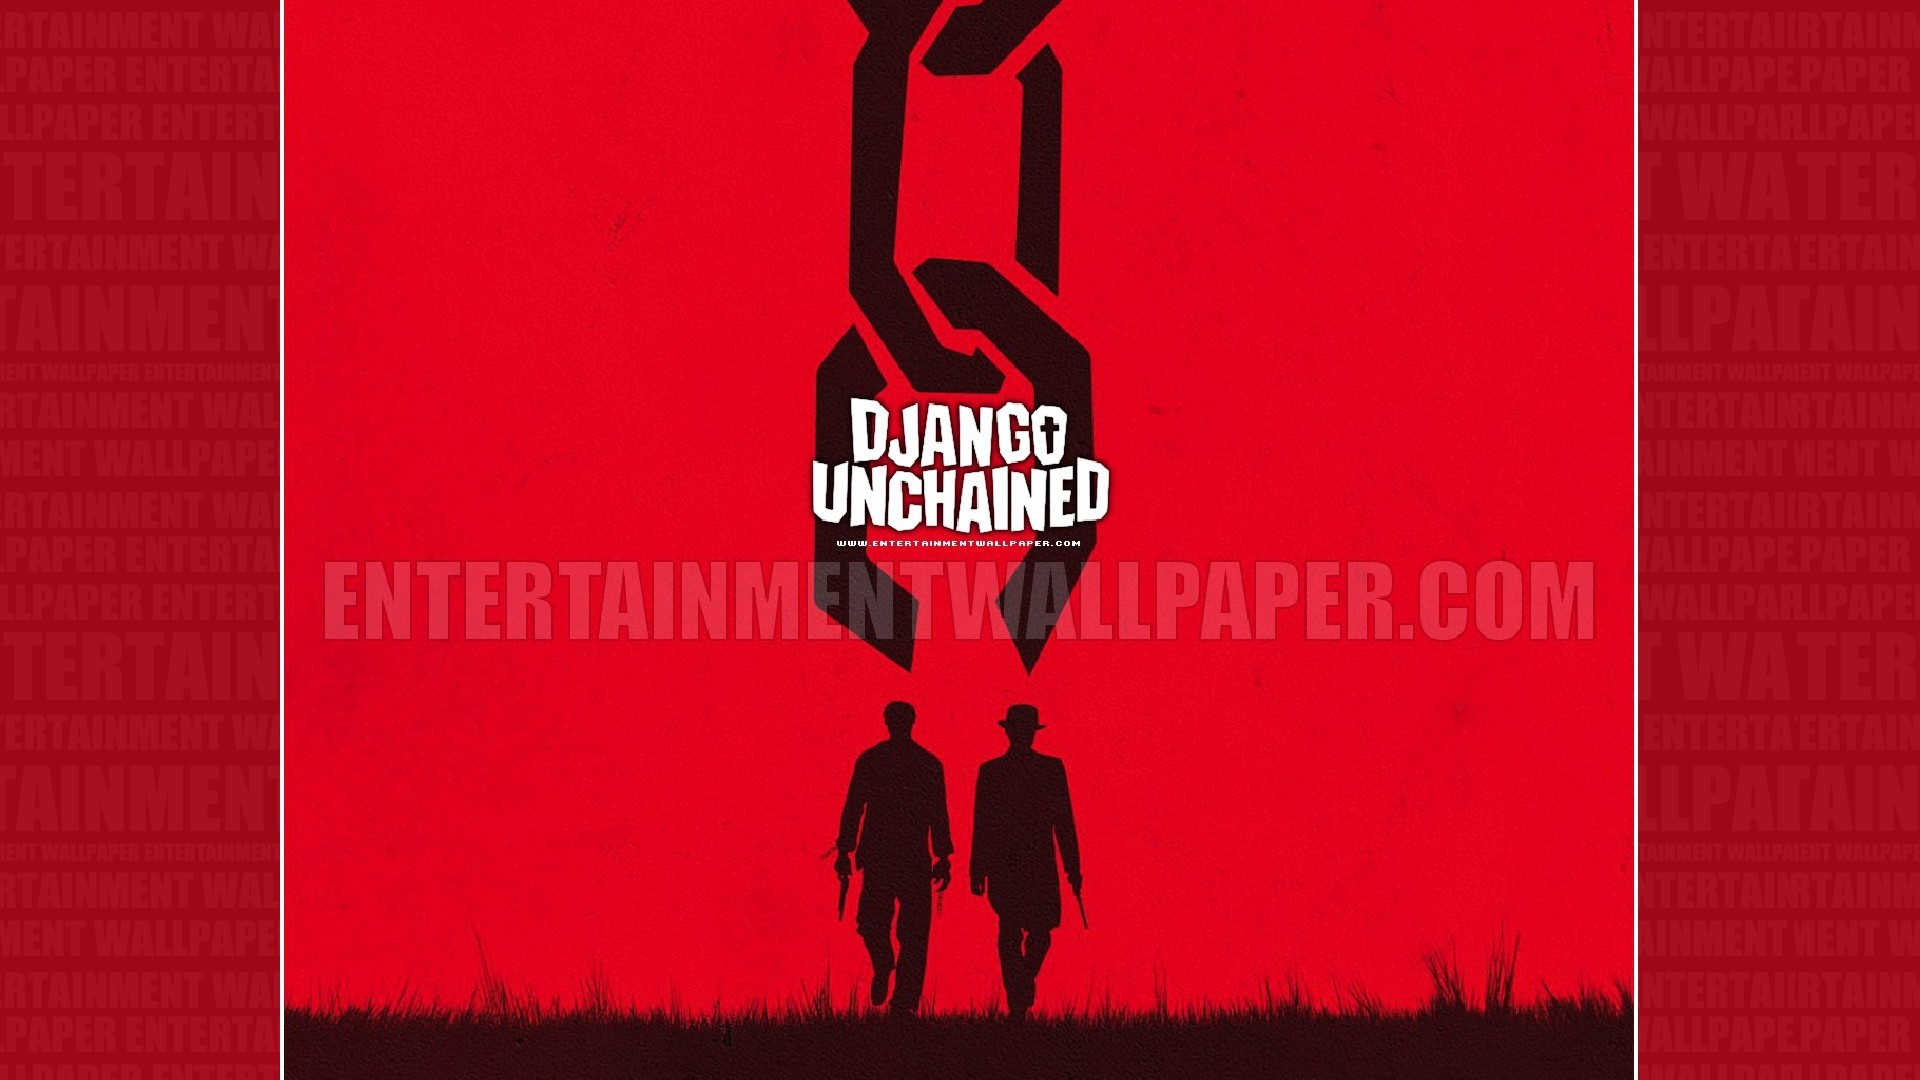 1920x1080 Django Unchained Wallpaper - Original size, download now.